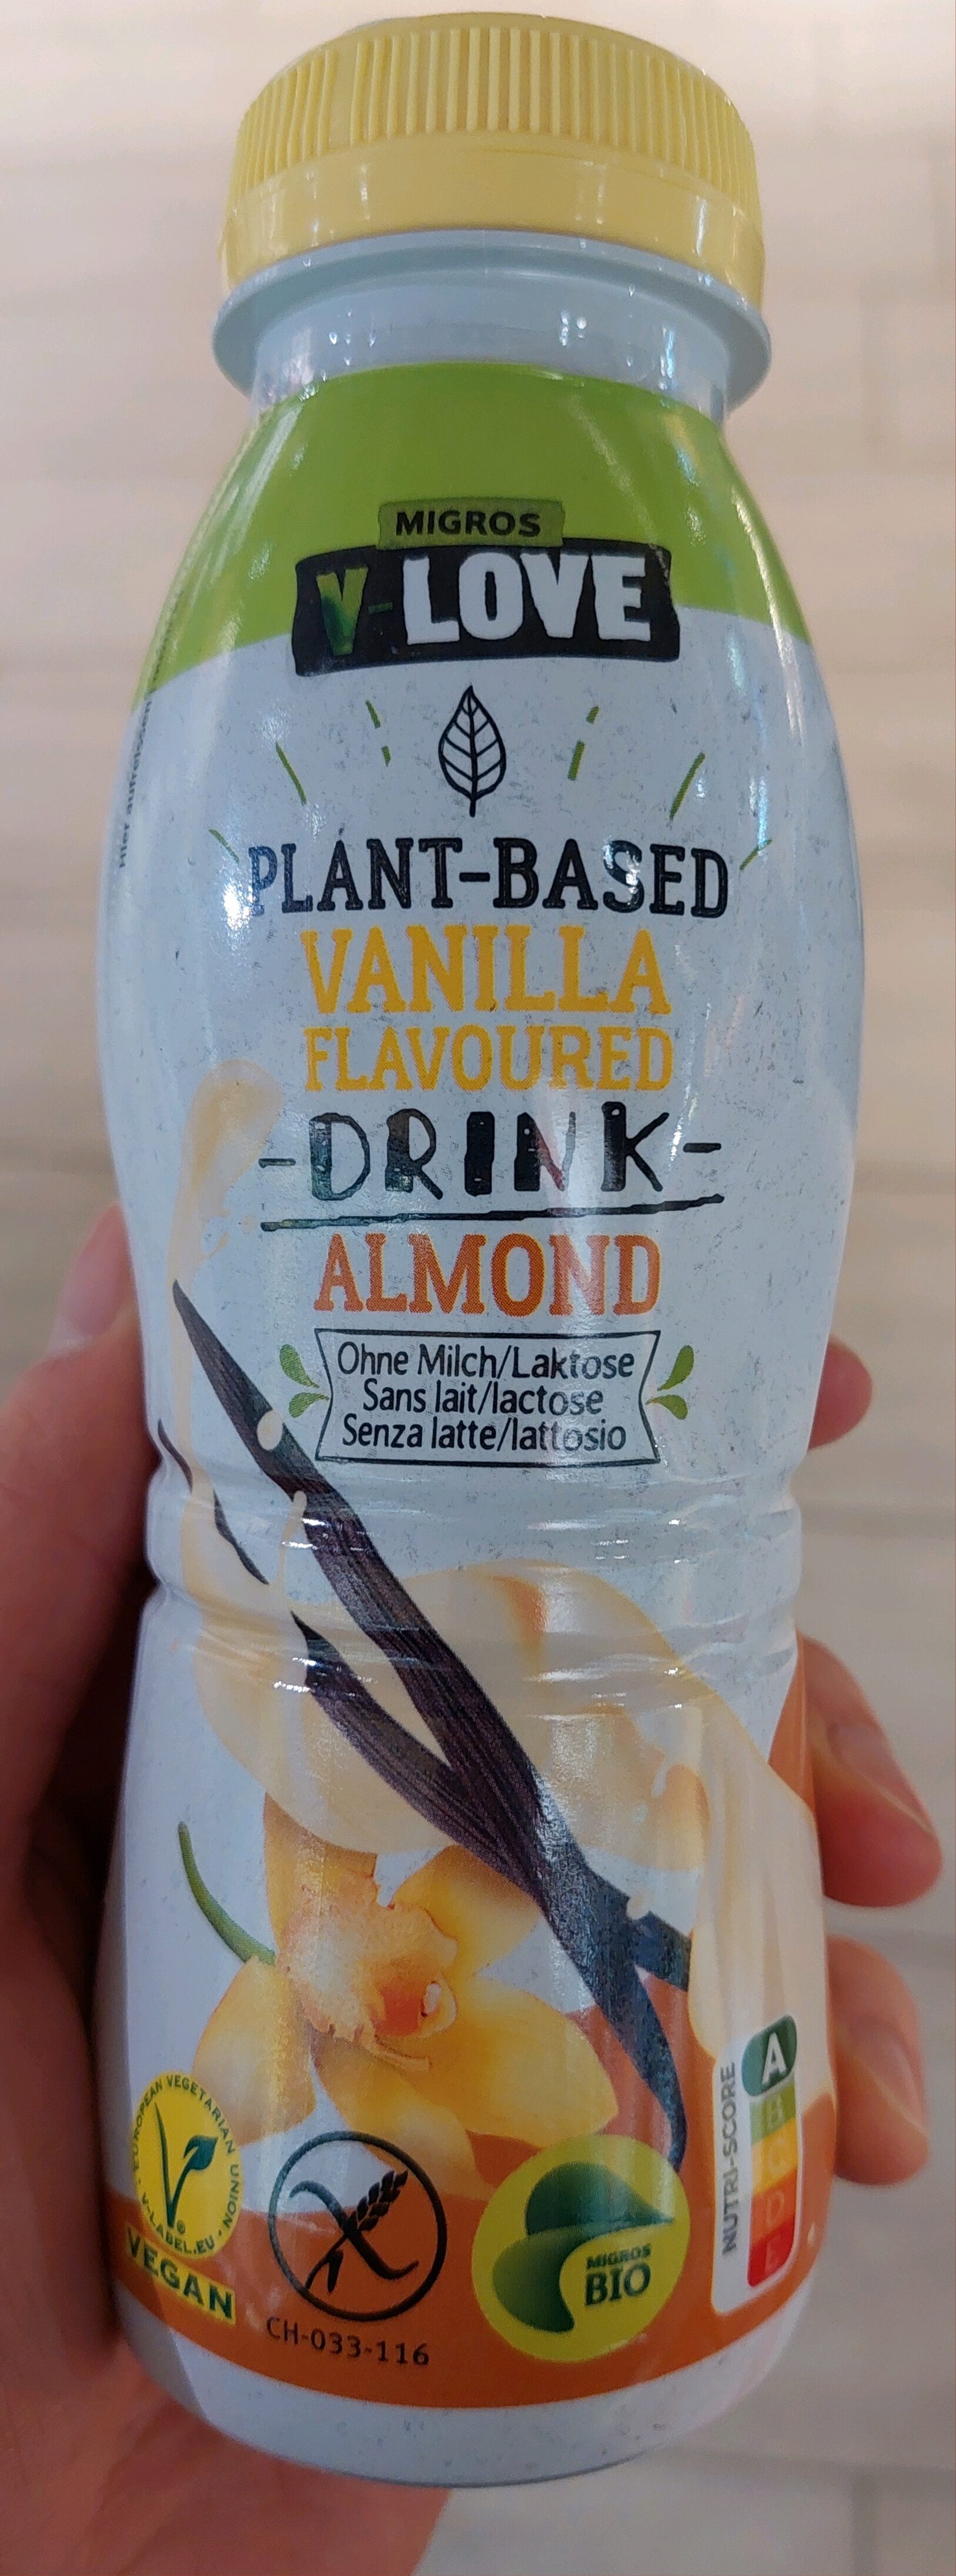 Plant-based Vanilla flavoured drink Almond - Produkt - en